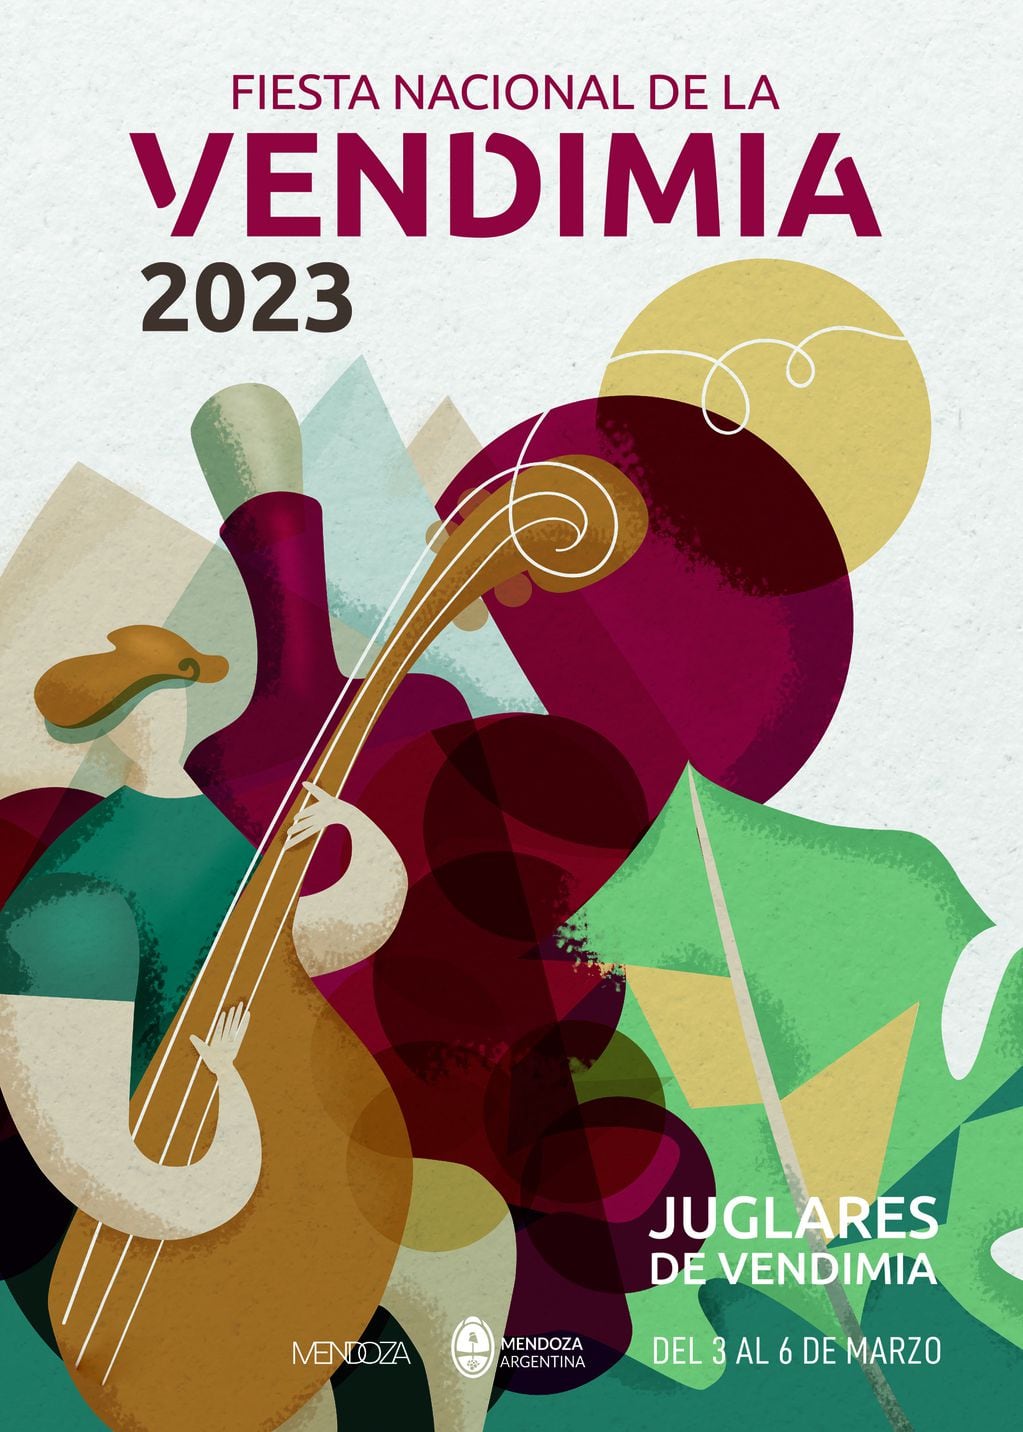 La Fiesta Nacional de la Vendimia 2023 ya tiene su sistema gráfico.